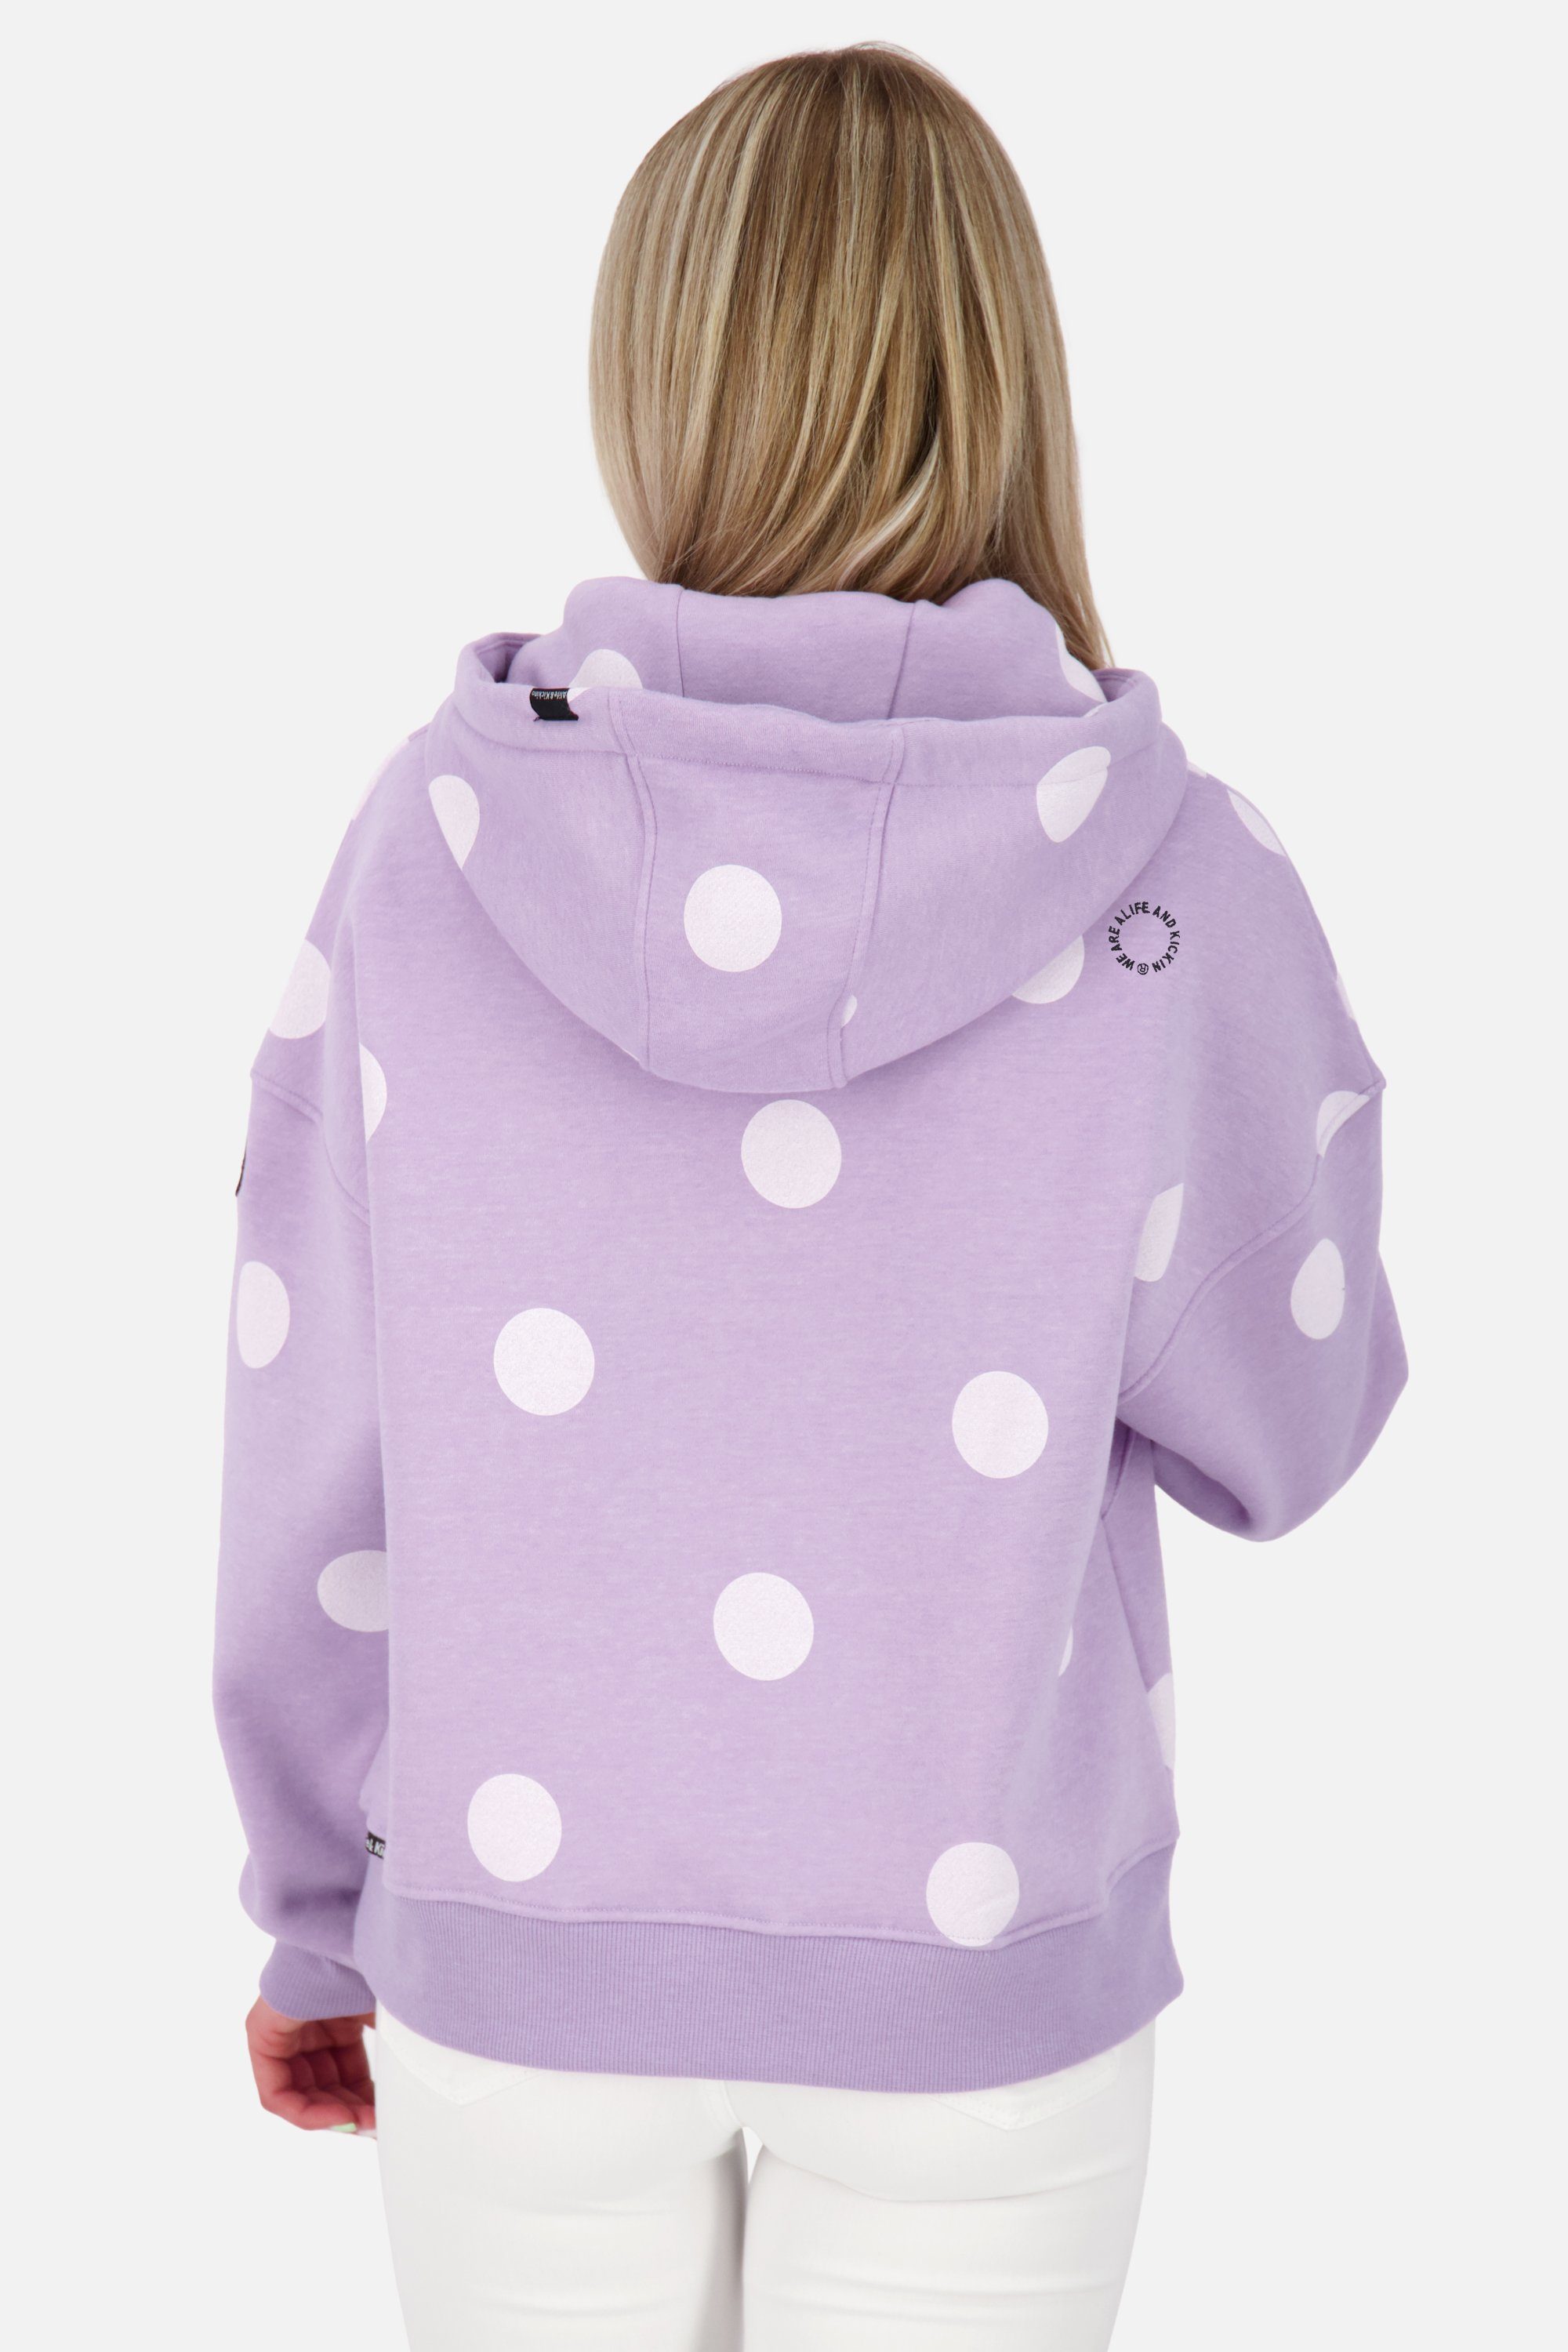 Alife & Kickin Kapuzensweatshirt Damen Pullover melange B lavender digital Sweatshirt Kapuzensweatshirt, JessyAK Hoodie